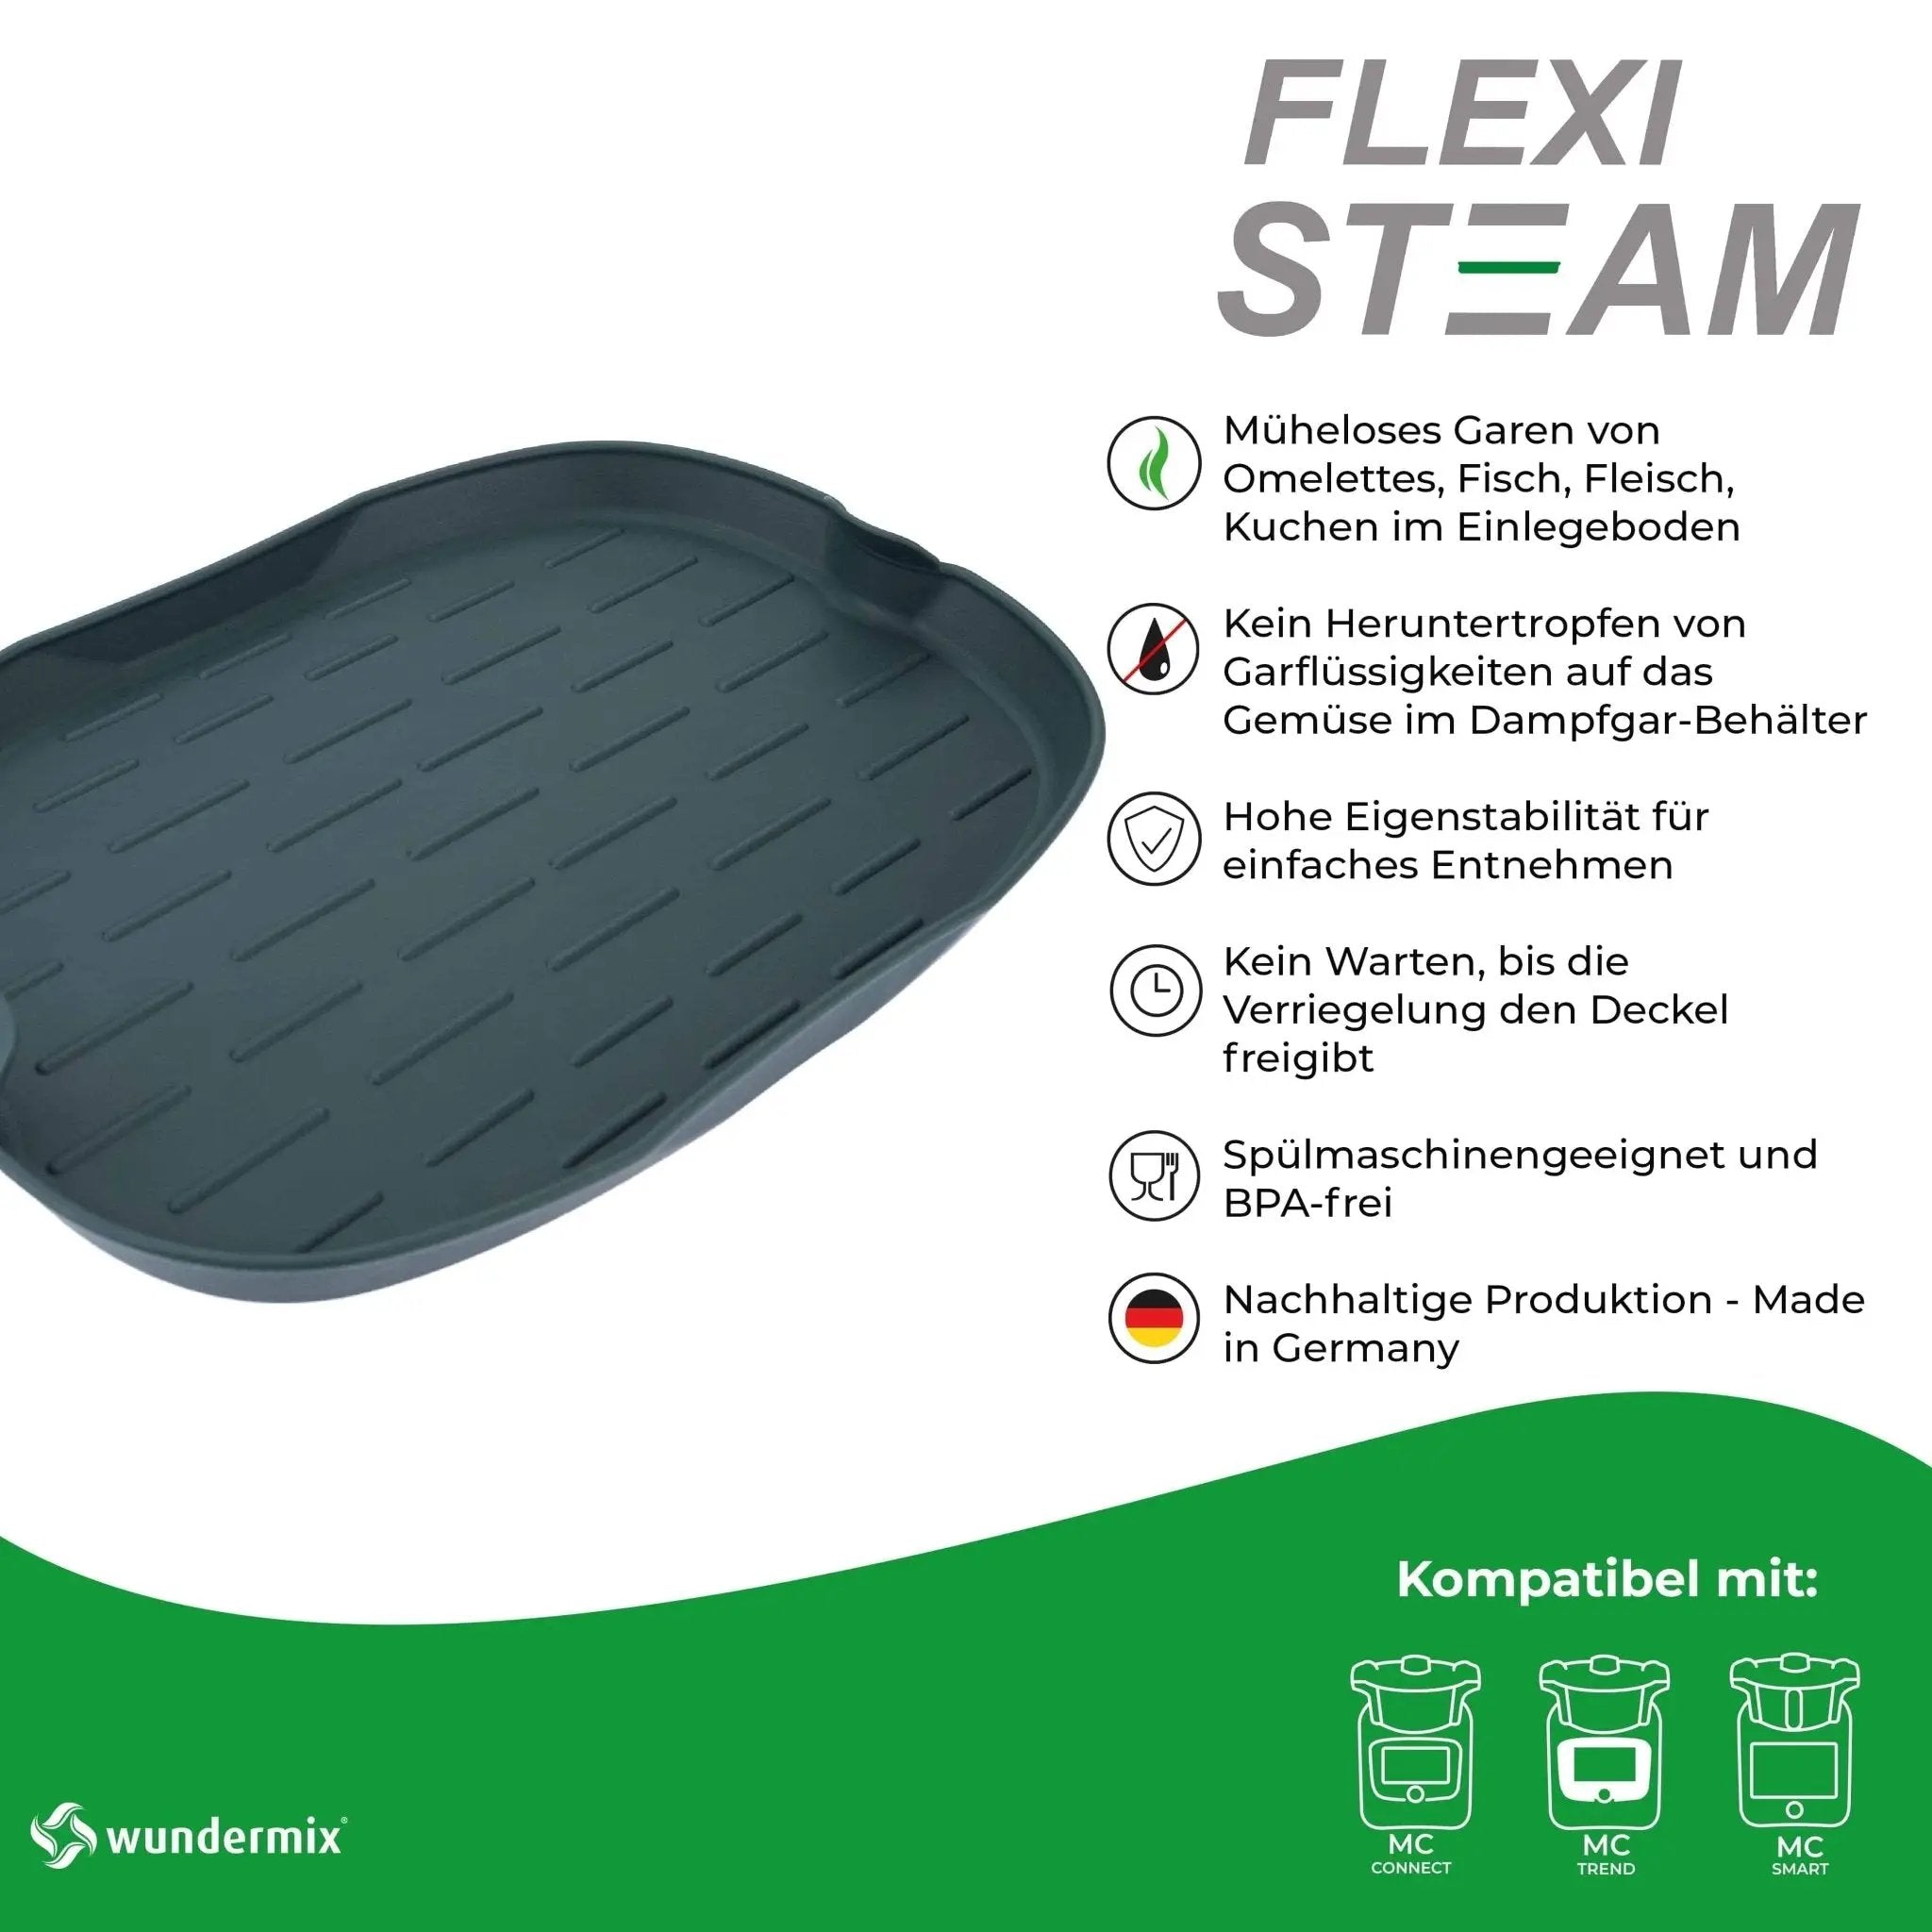 FlexiSteam® | Silikon-Auflaufform für Dampfgaraufsatz von Monsieur Cuisine Connect, Trend, Smart, Ed - Wundermix GmbH